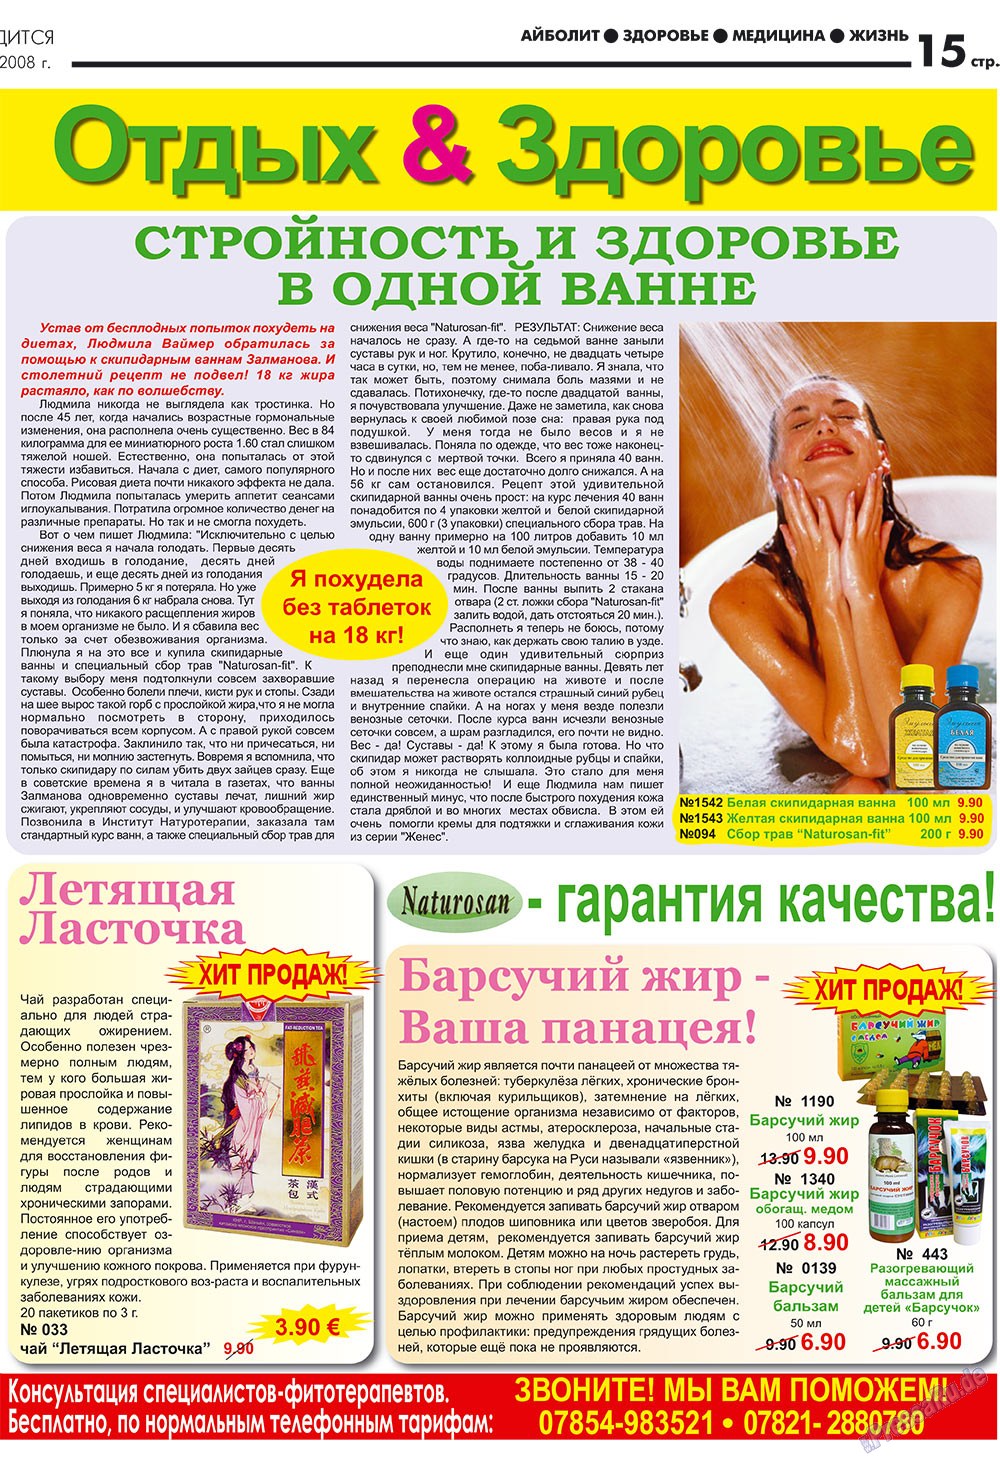 АйБолит, газета. 2008 №1 стр.15